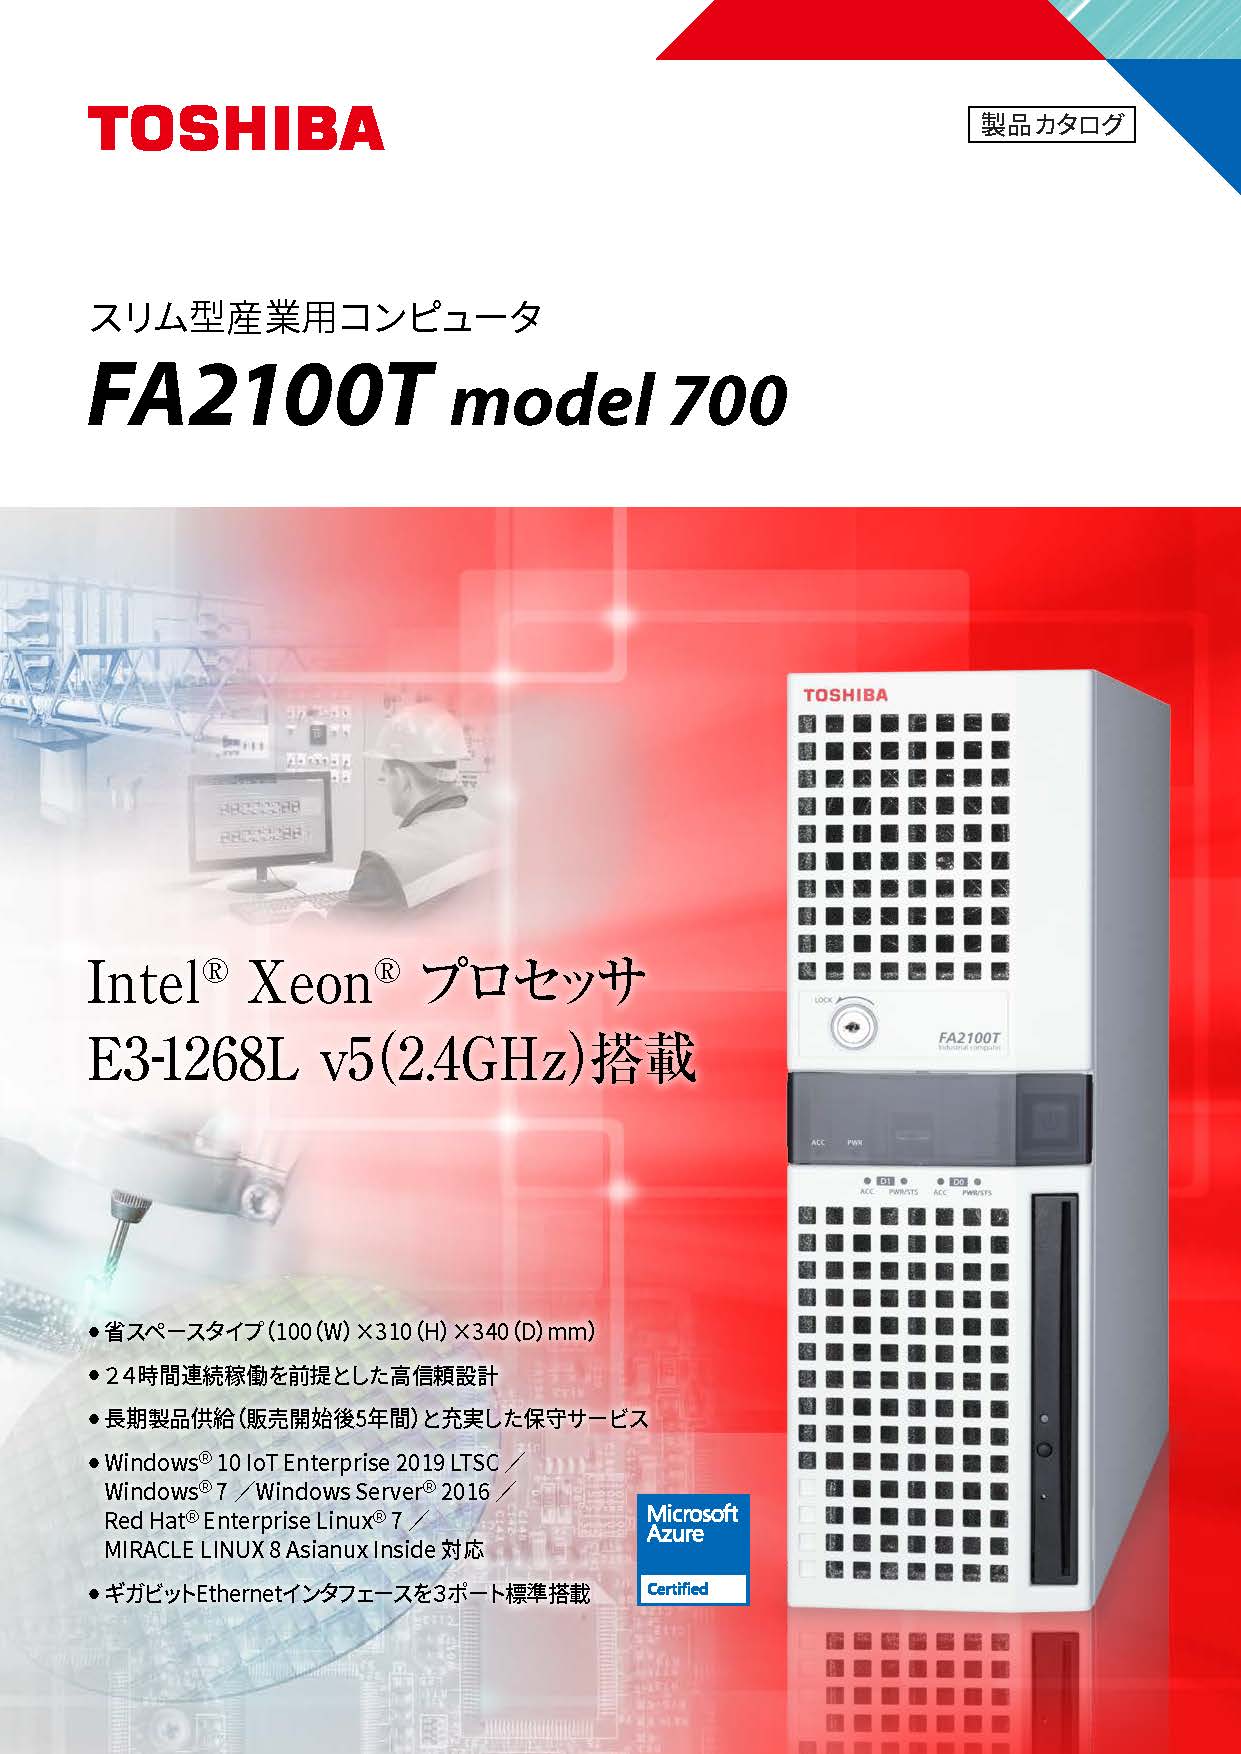 スリム型 産業用コンピュータFA2100T model 700カタログ